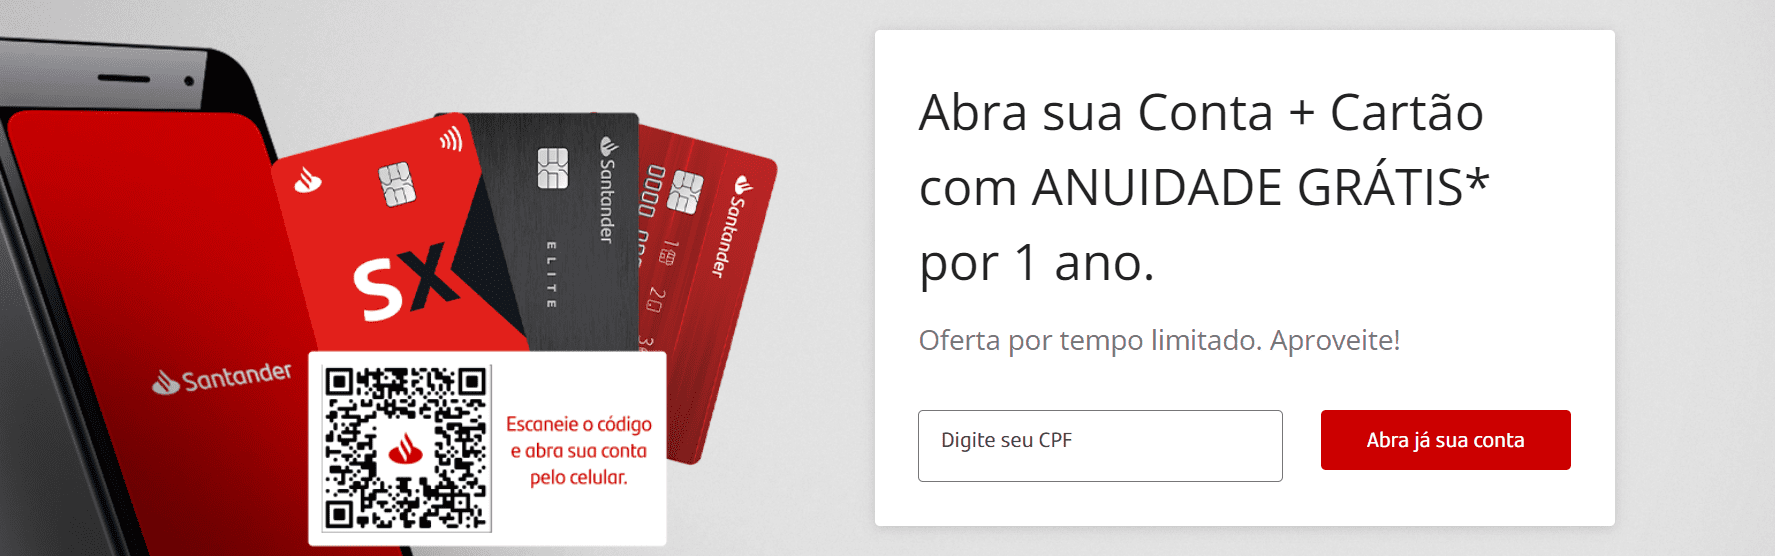 Promoção Santander isenta anuidade de cartões